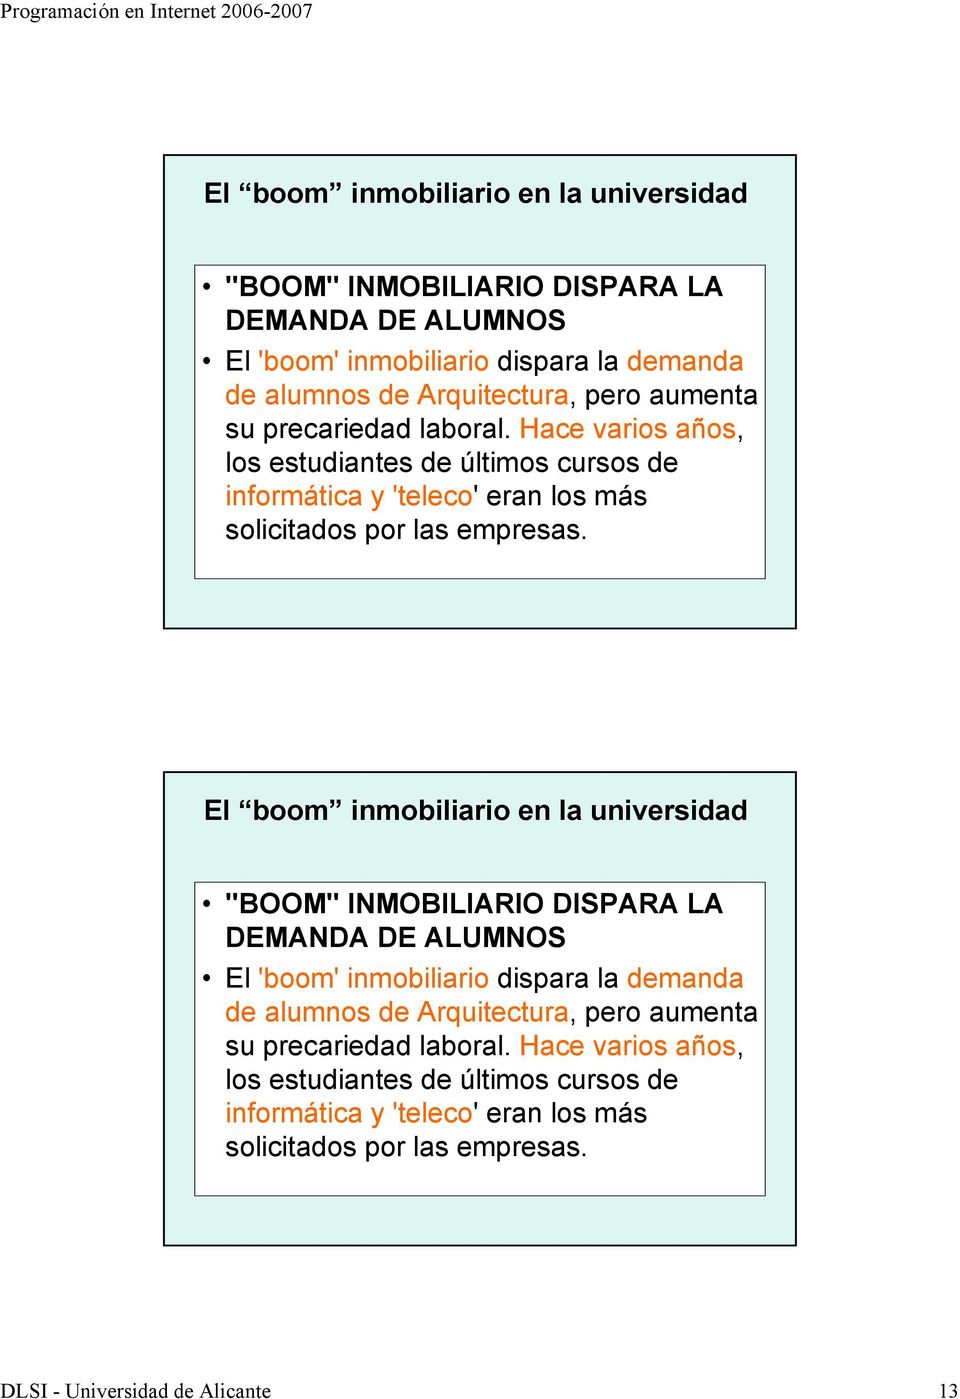 DLSI - Universidad de Alicante 13